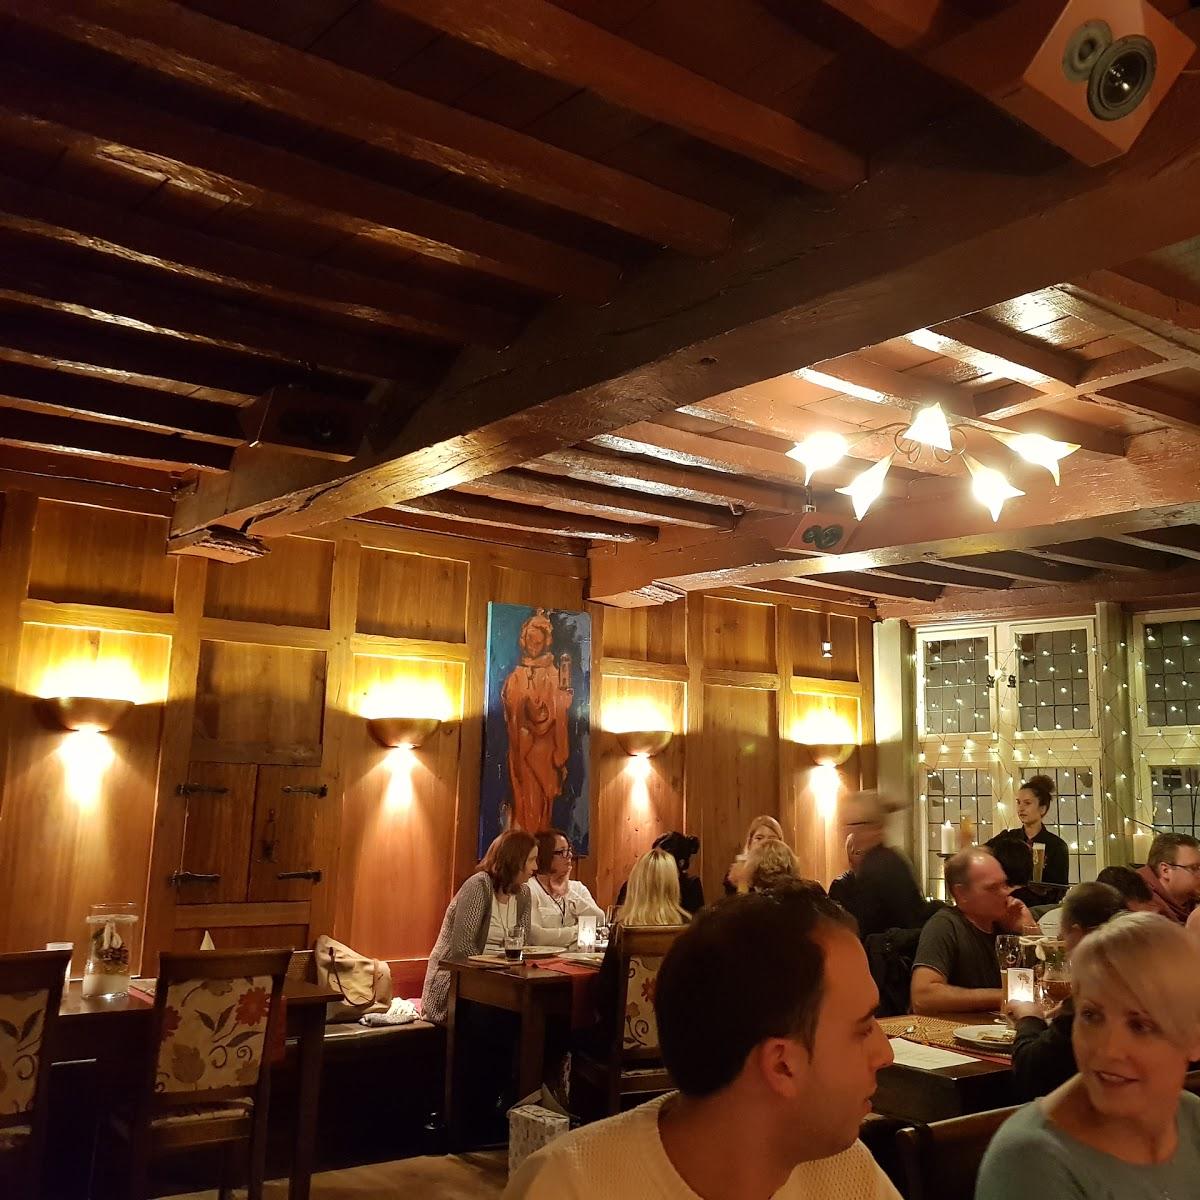 Restaurant "Weißes Haus" in Xanten